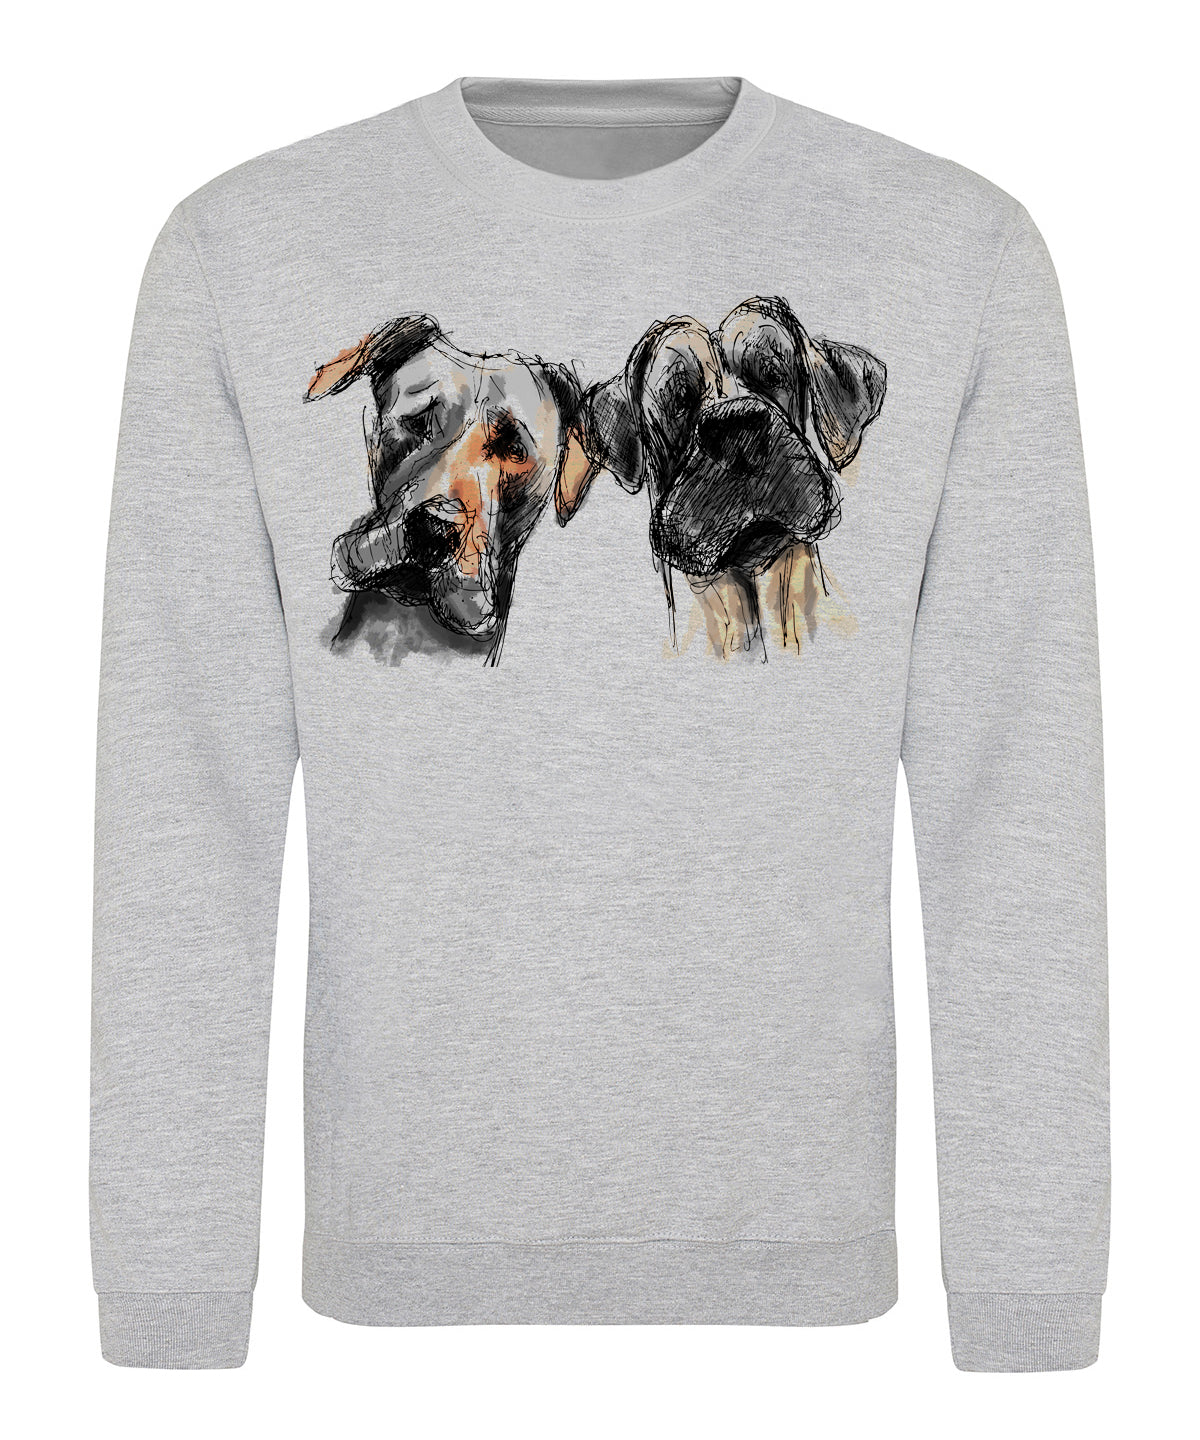 Two dogs unisex sweatshirt